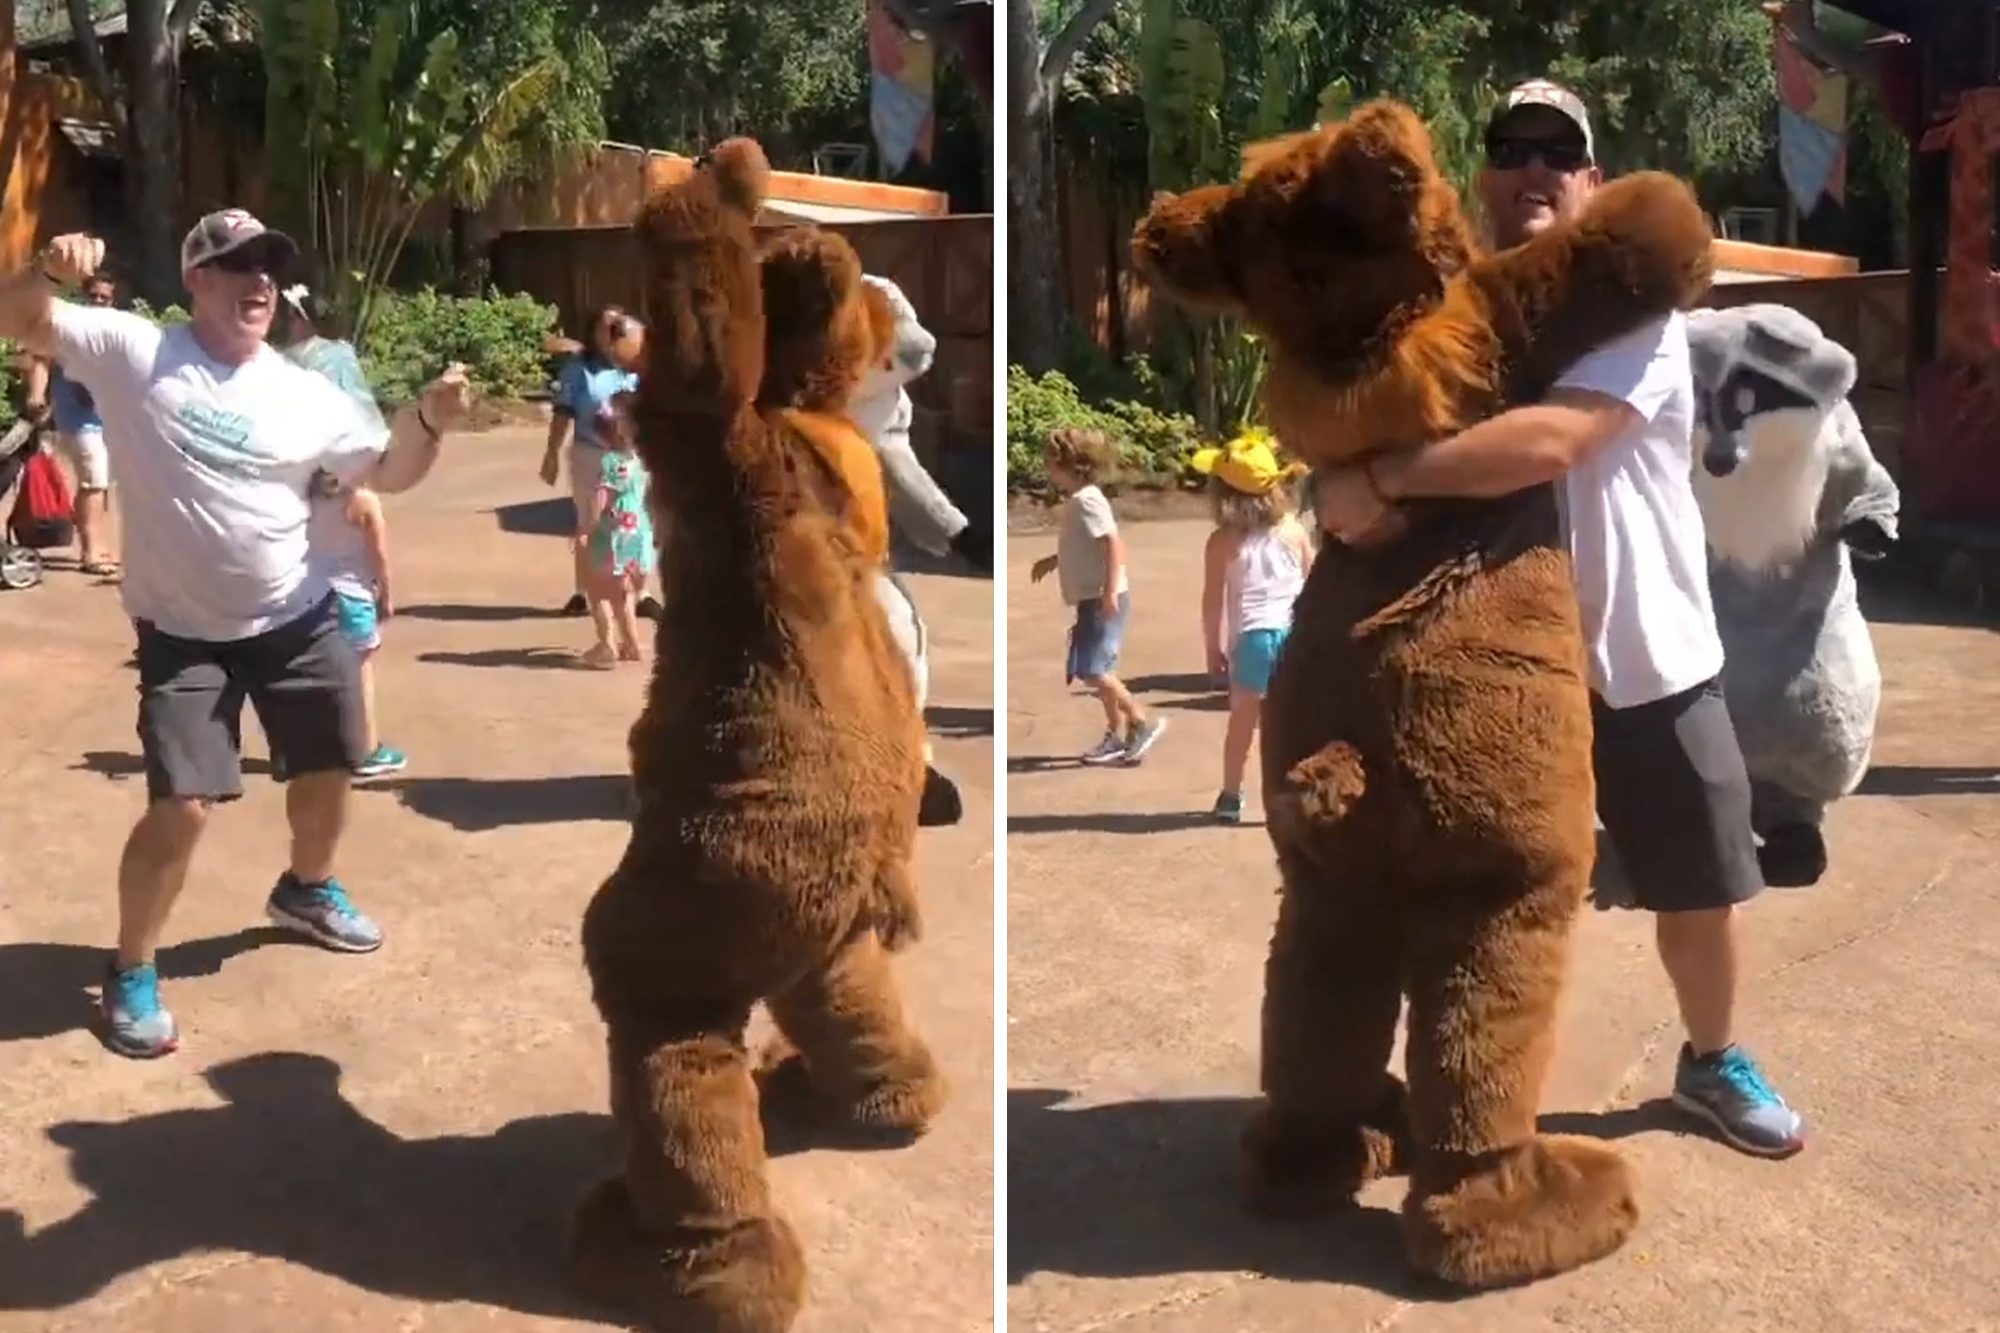 ad frank share teddy bear lap dance photos